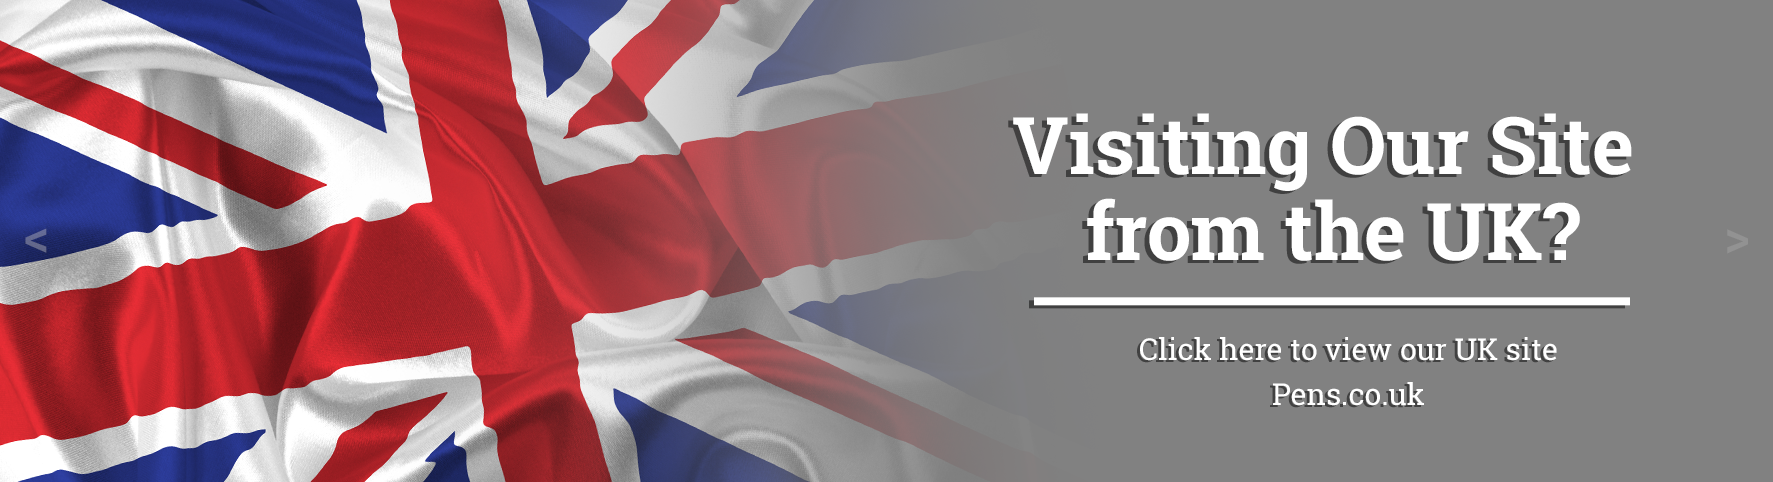 Promotional Pens Website for UK based Visitors